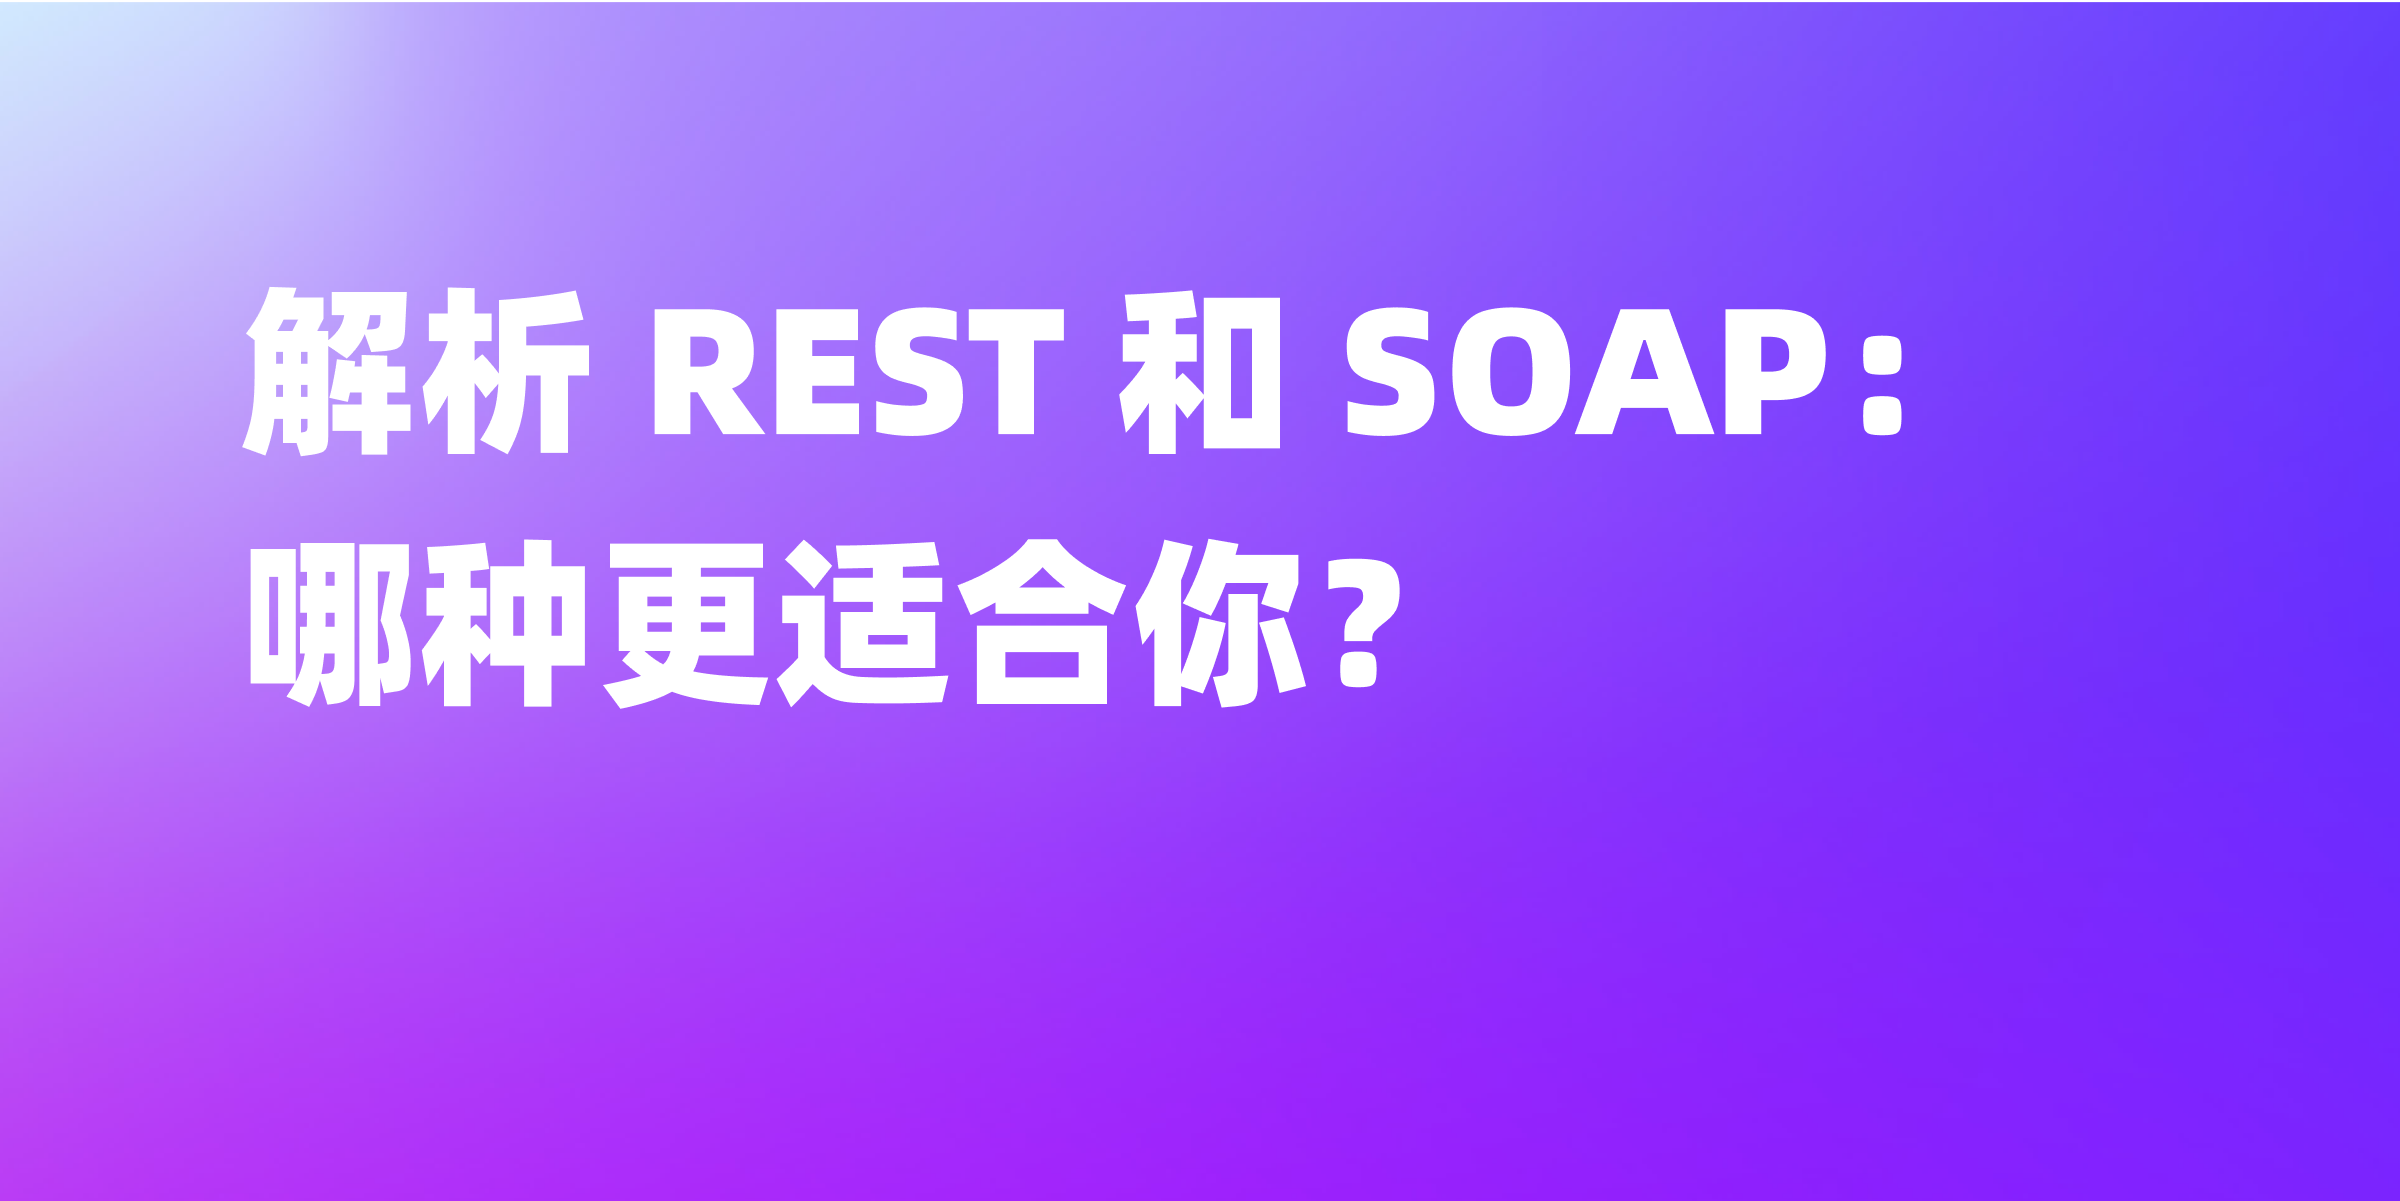 REST 与 SOAP 之间的差异